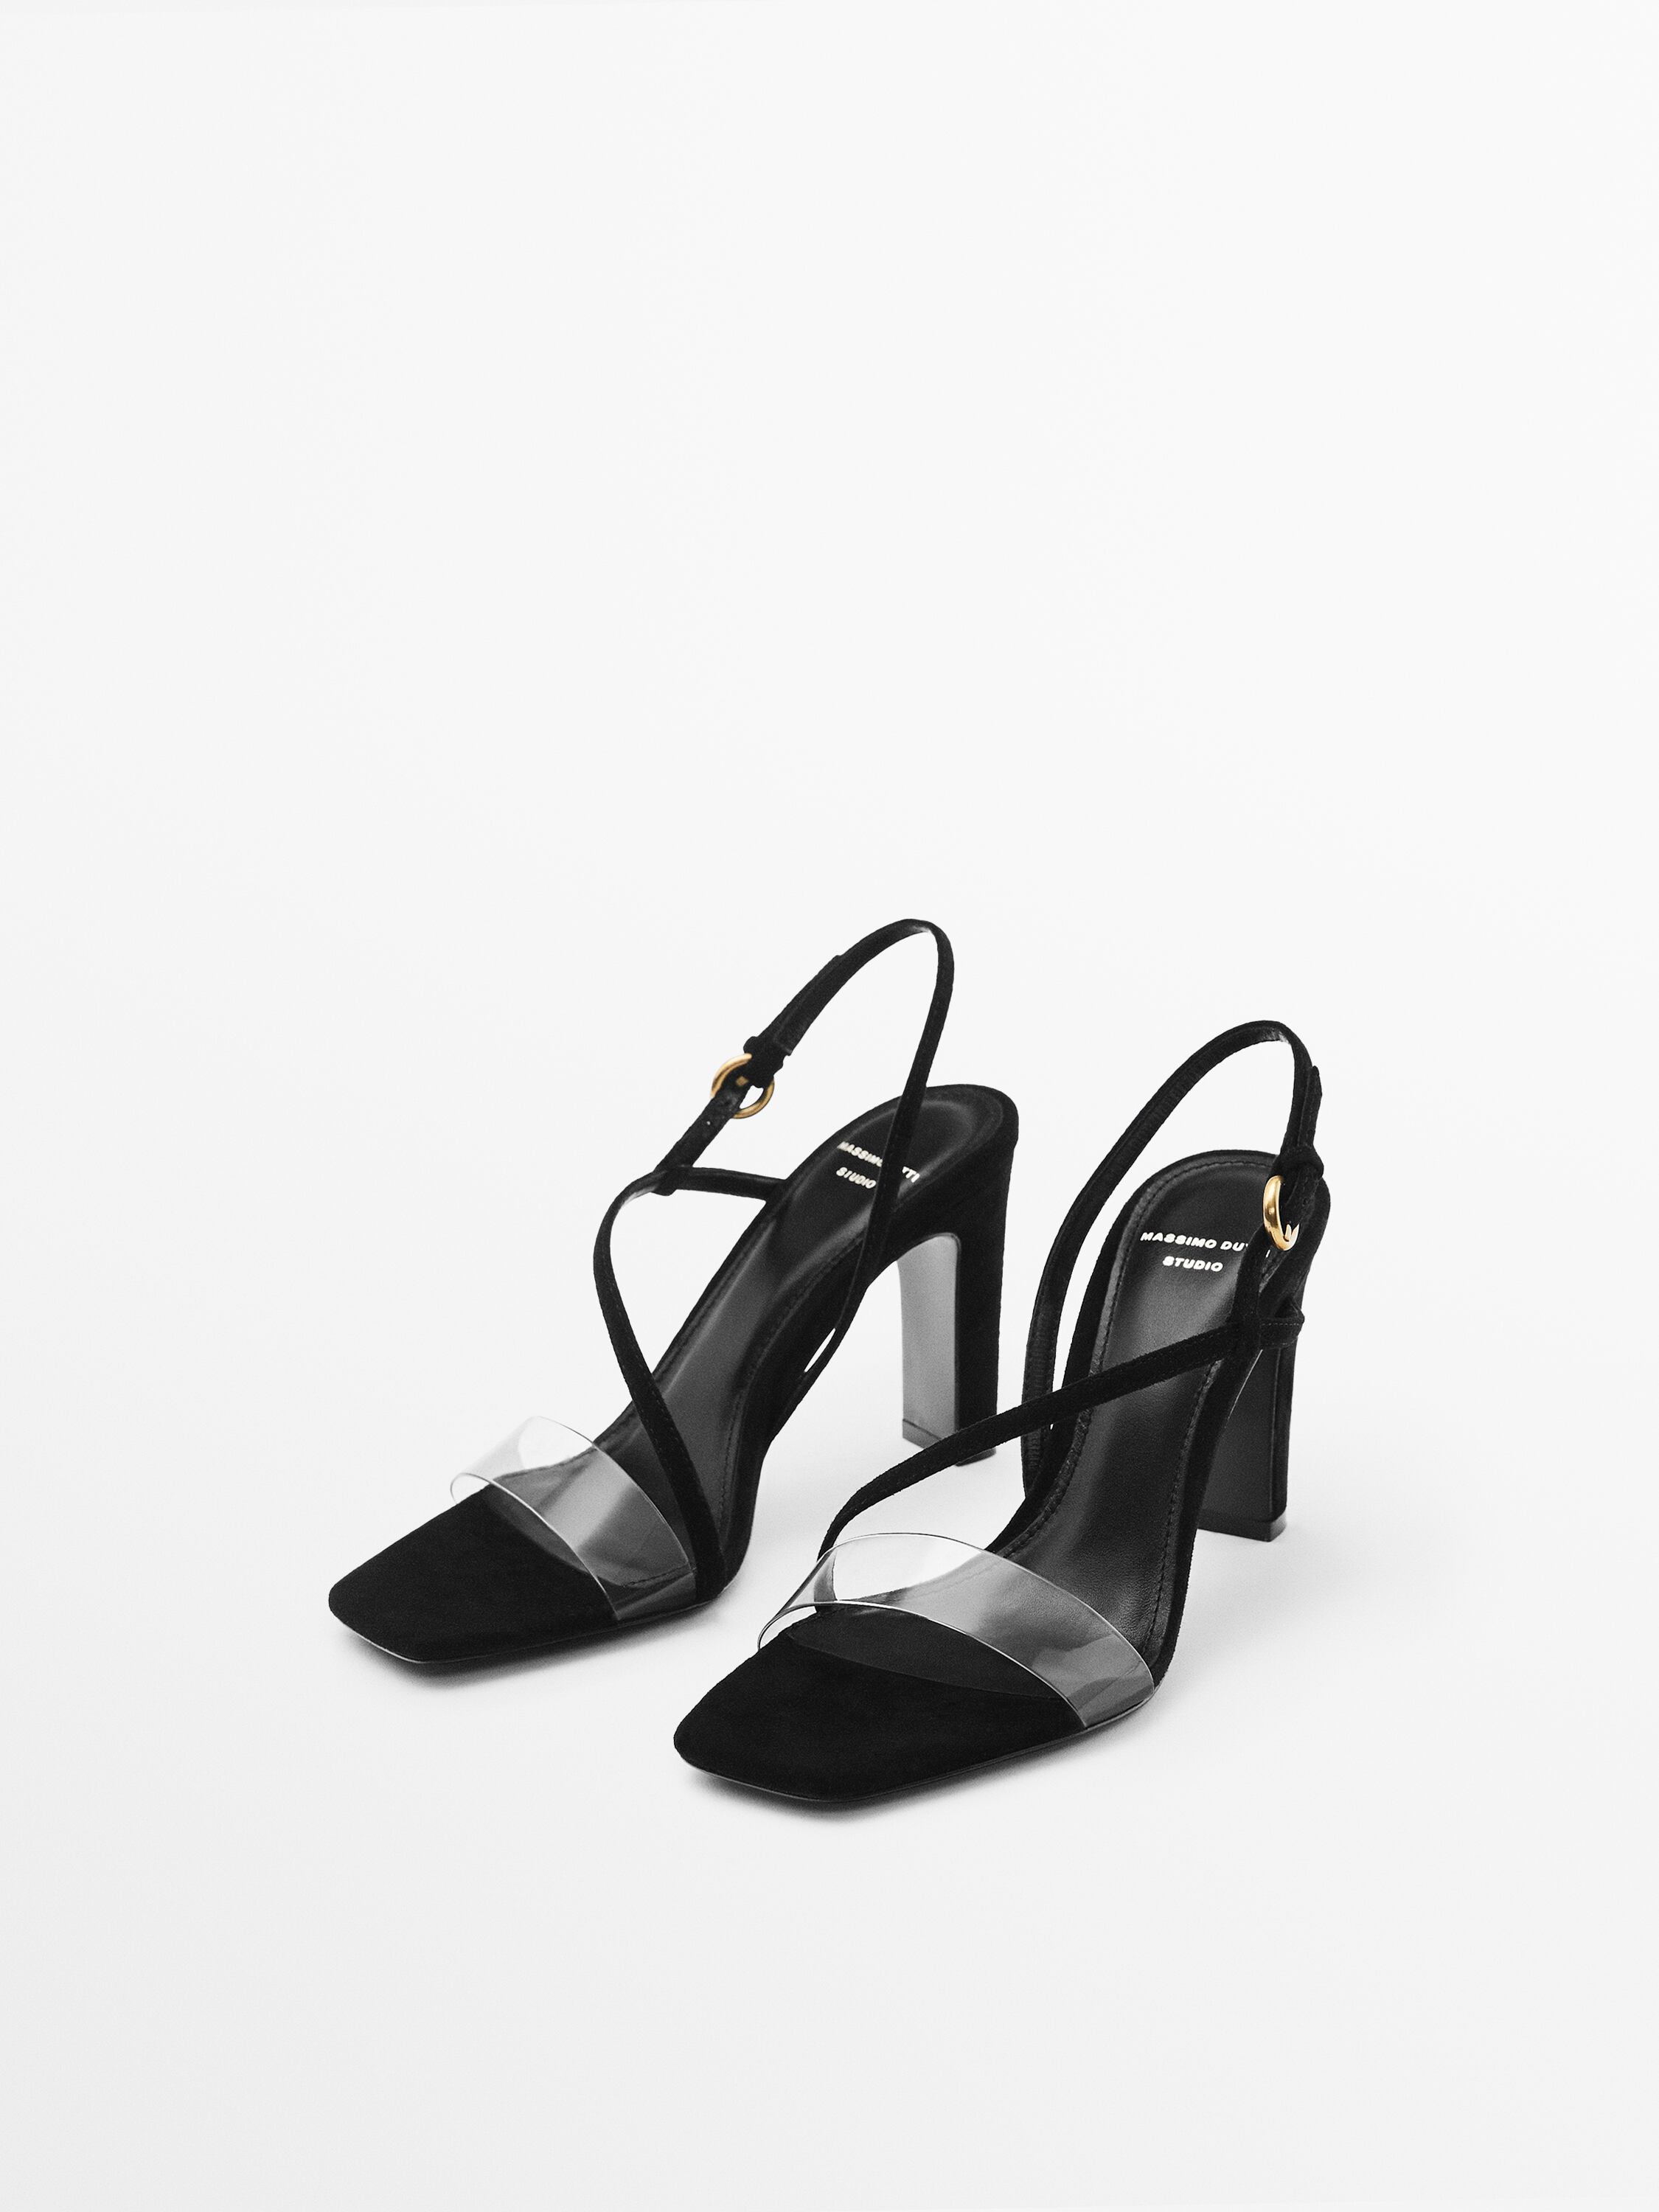 High-heel suede sandals with vinyl vamp - Studio